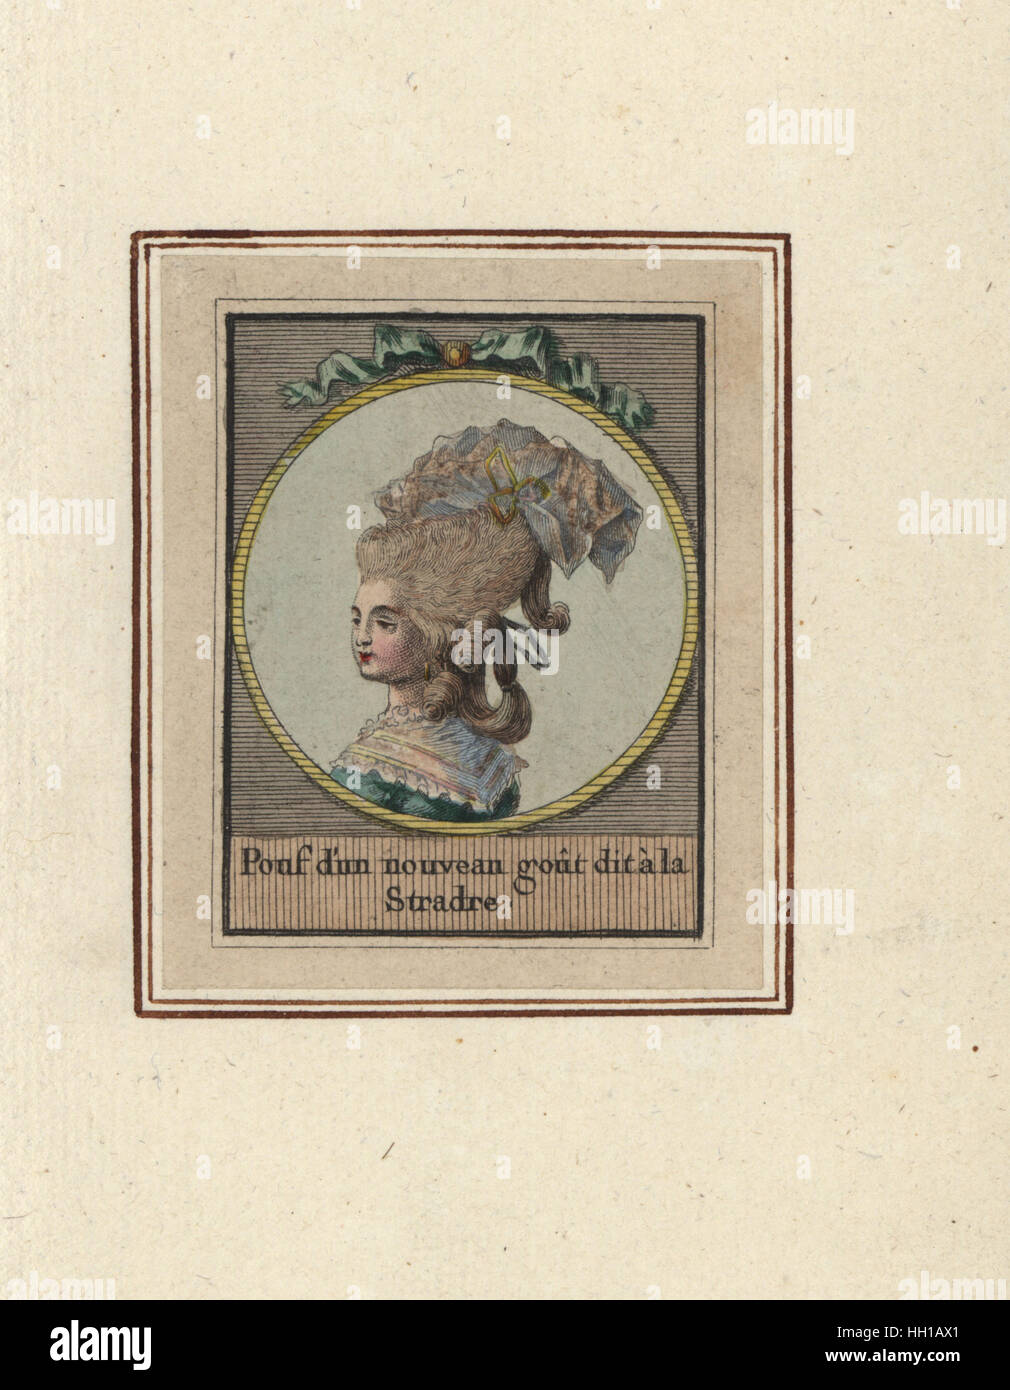 Mujer en un nuevo estilo de pouf llamado Stradre. Pouf d'un nouveau dit a la Stradre gota. Copperplate Handcolored grabado por un artista desconocido de un álbum de peinados de moda de 1783, Suite des Coeffures a la Mode en 1783, Esnauts et Rapilly, París, 1783. Foto de stock